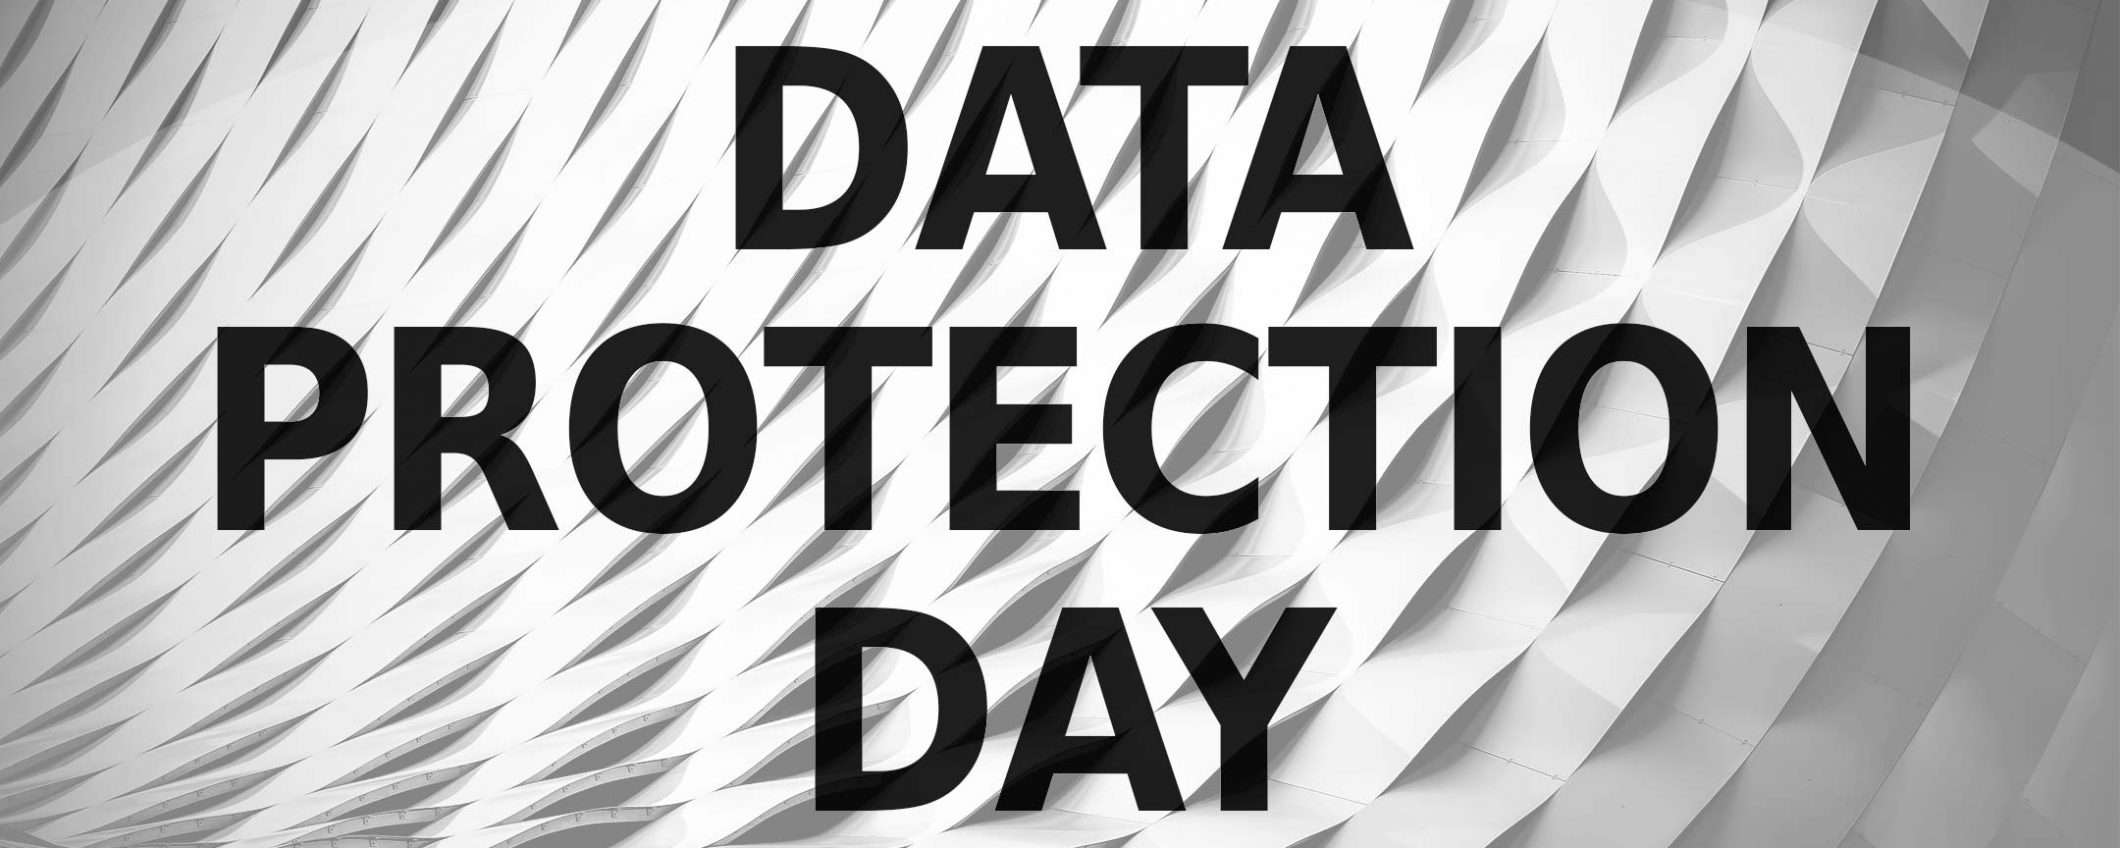 28 gennaio: oggi è il Data Protection Day